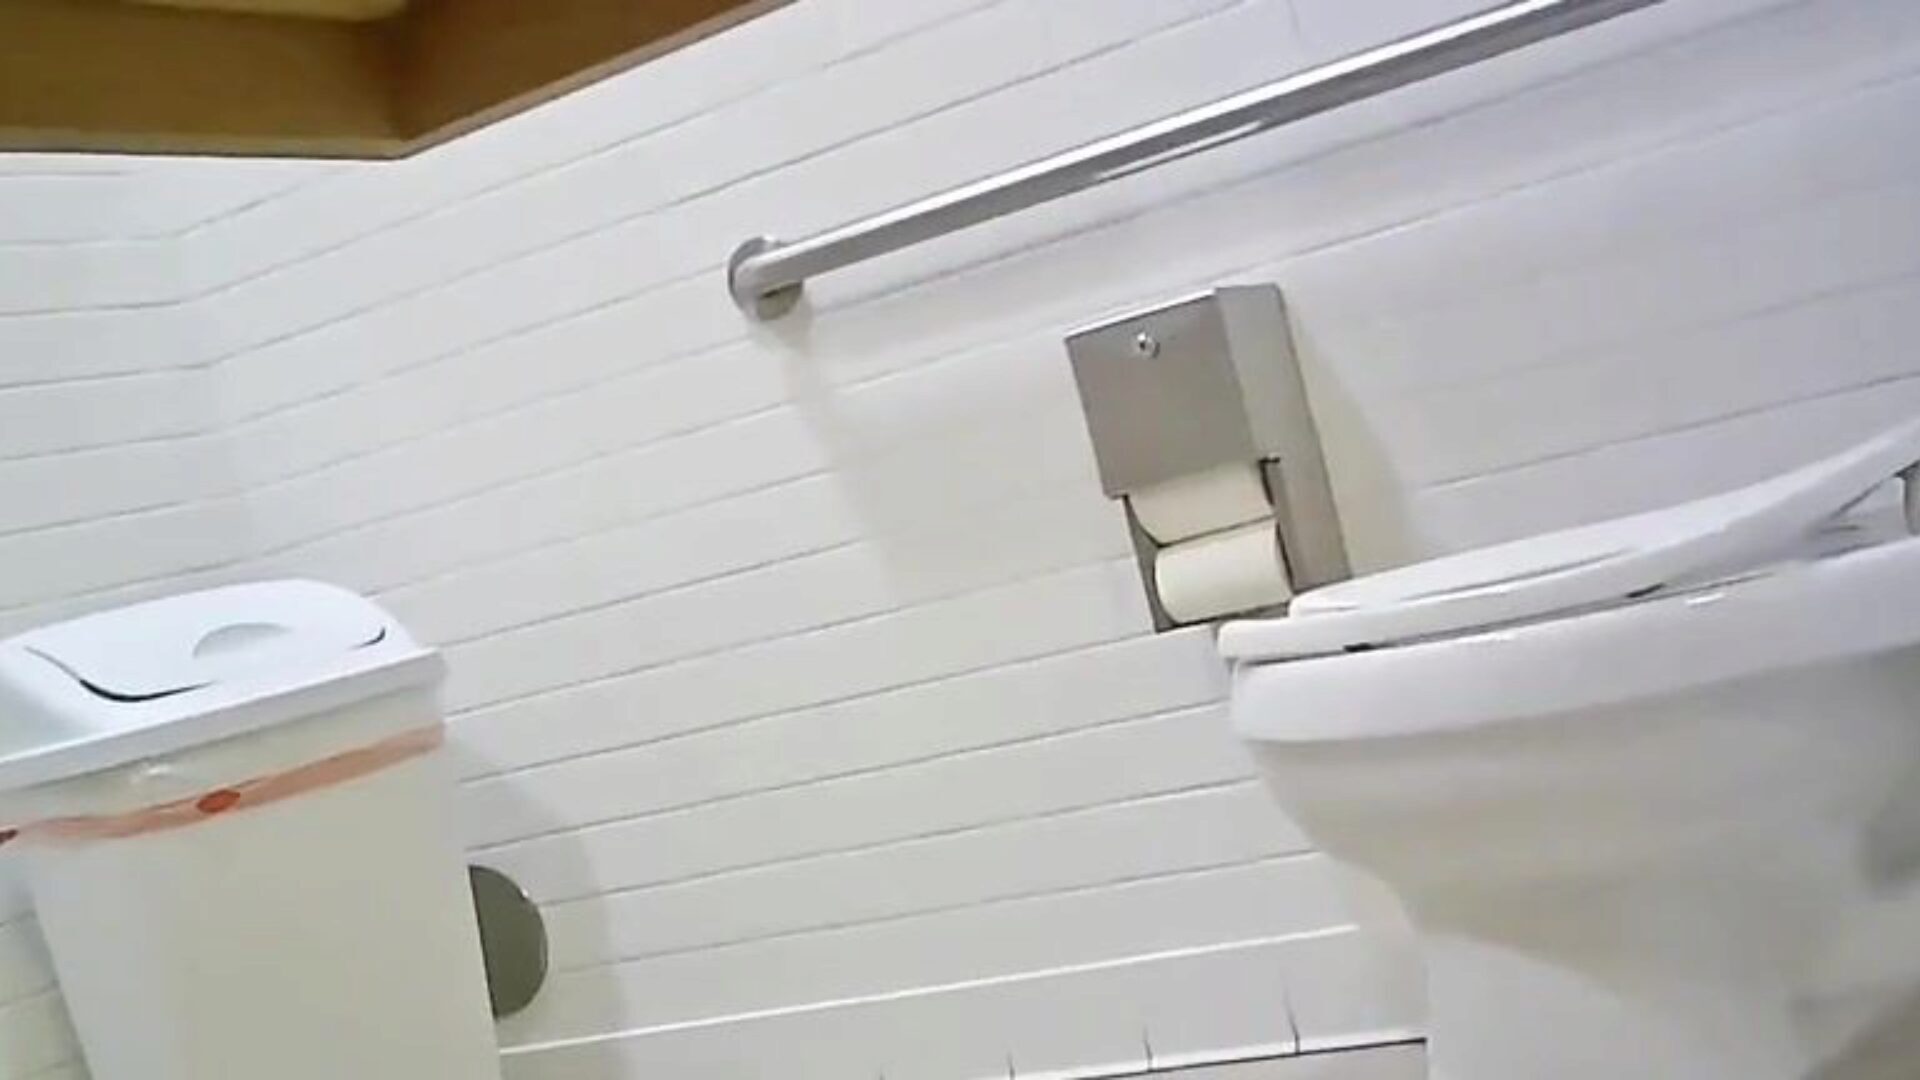 skjult toilet kamera - pas hotty ideel gazoo tjek denne ud, fortæl mig hvad du synes; p ’